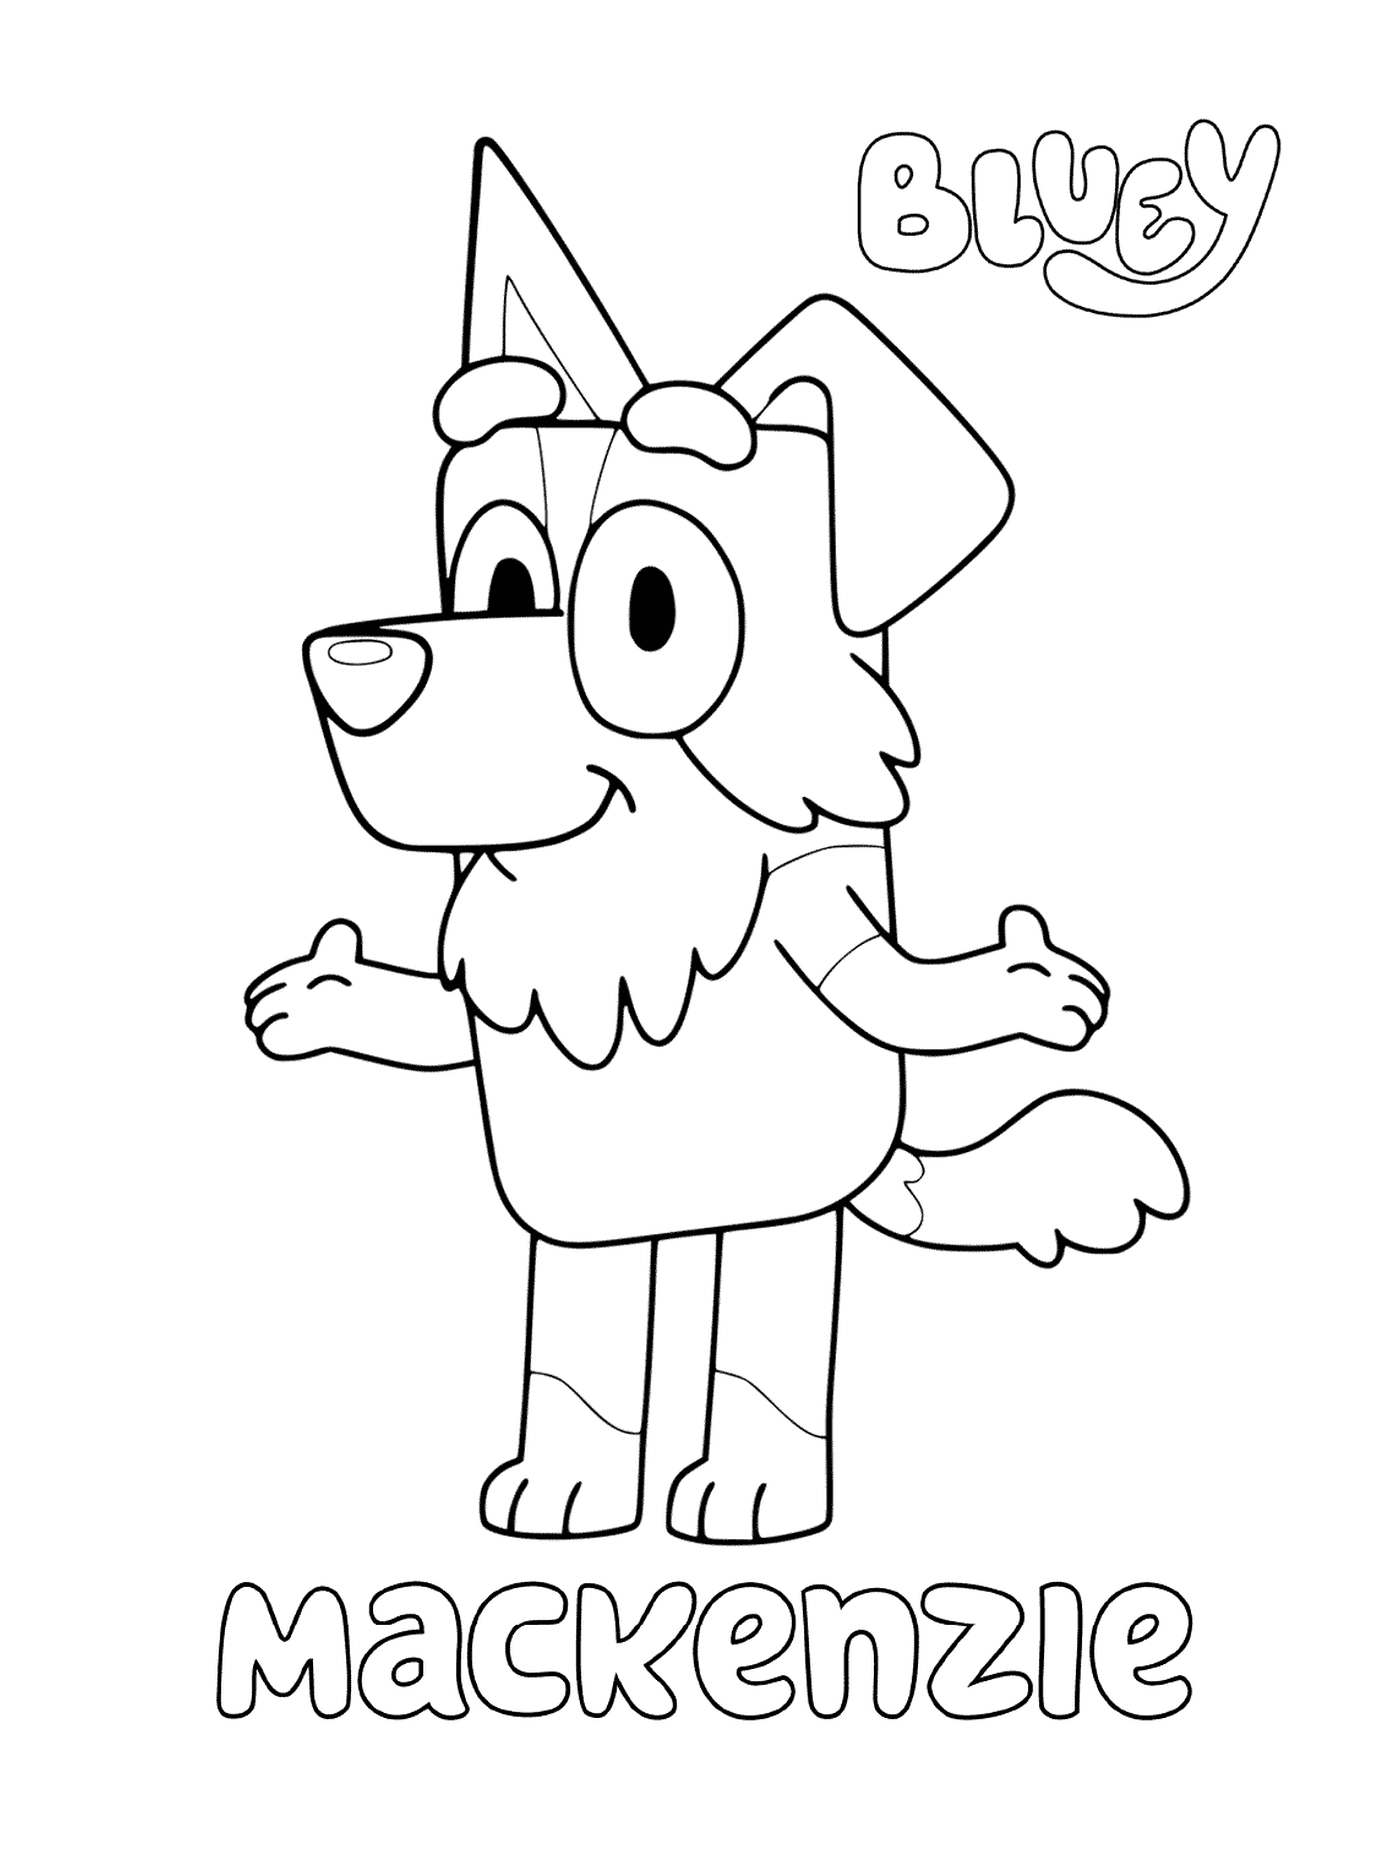  Un cane dei cartoni animati di nome Mackenzie 